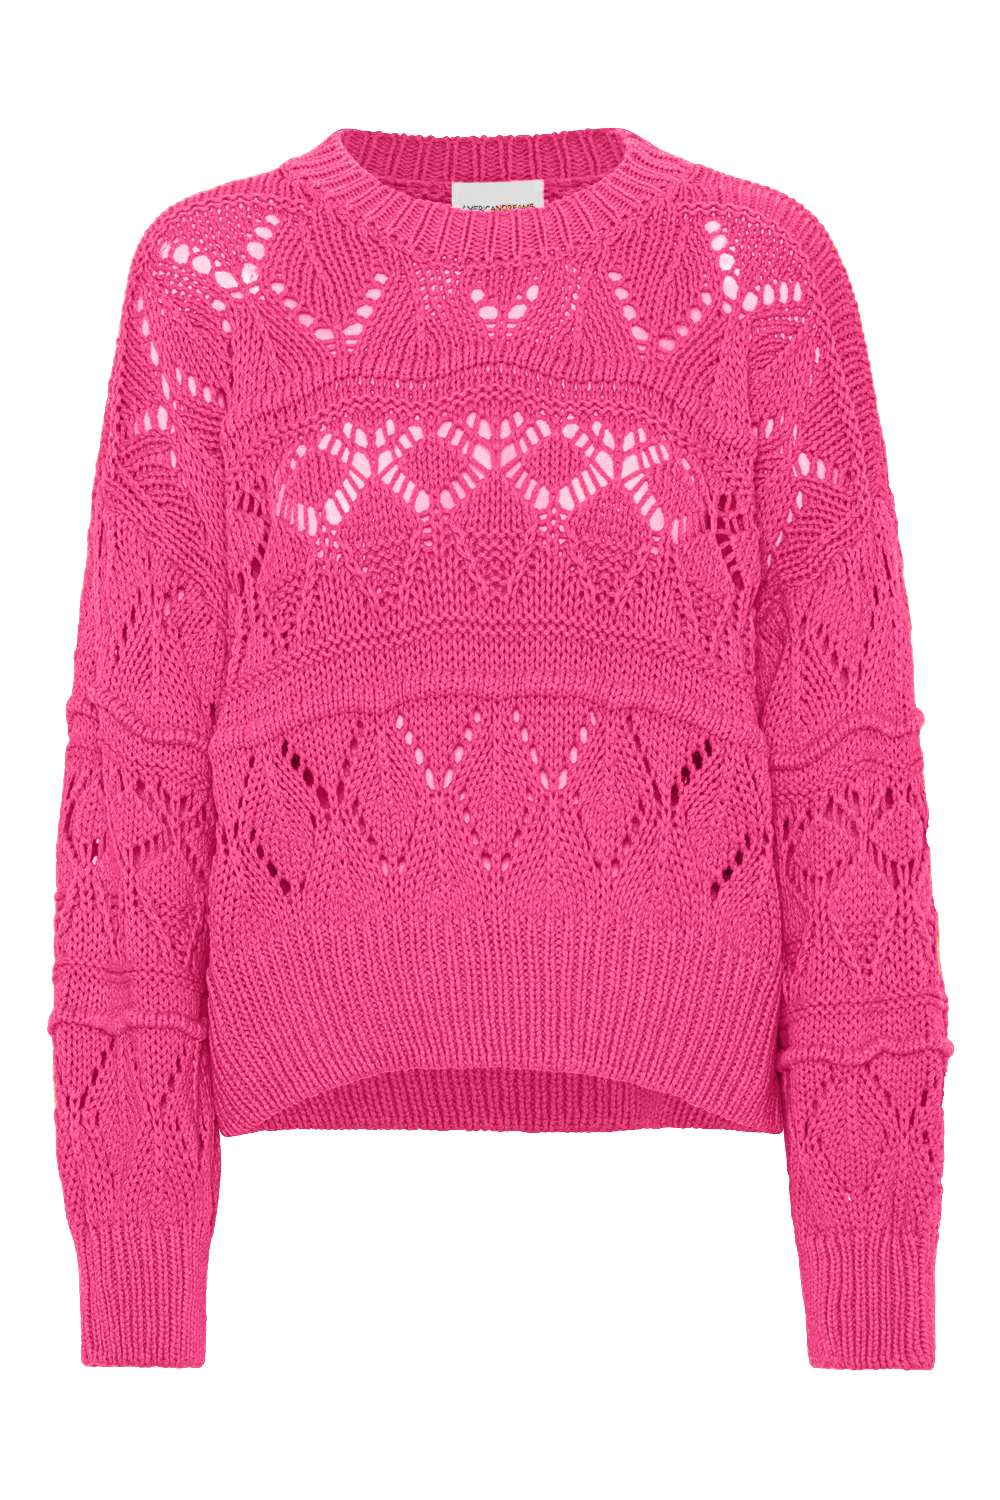 Cassie Cotton Pullover Neon Pink